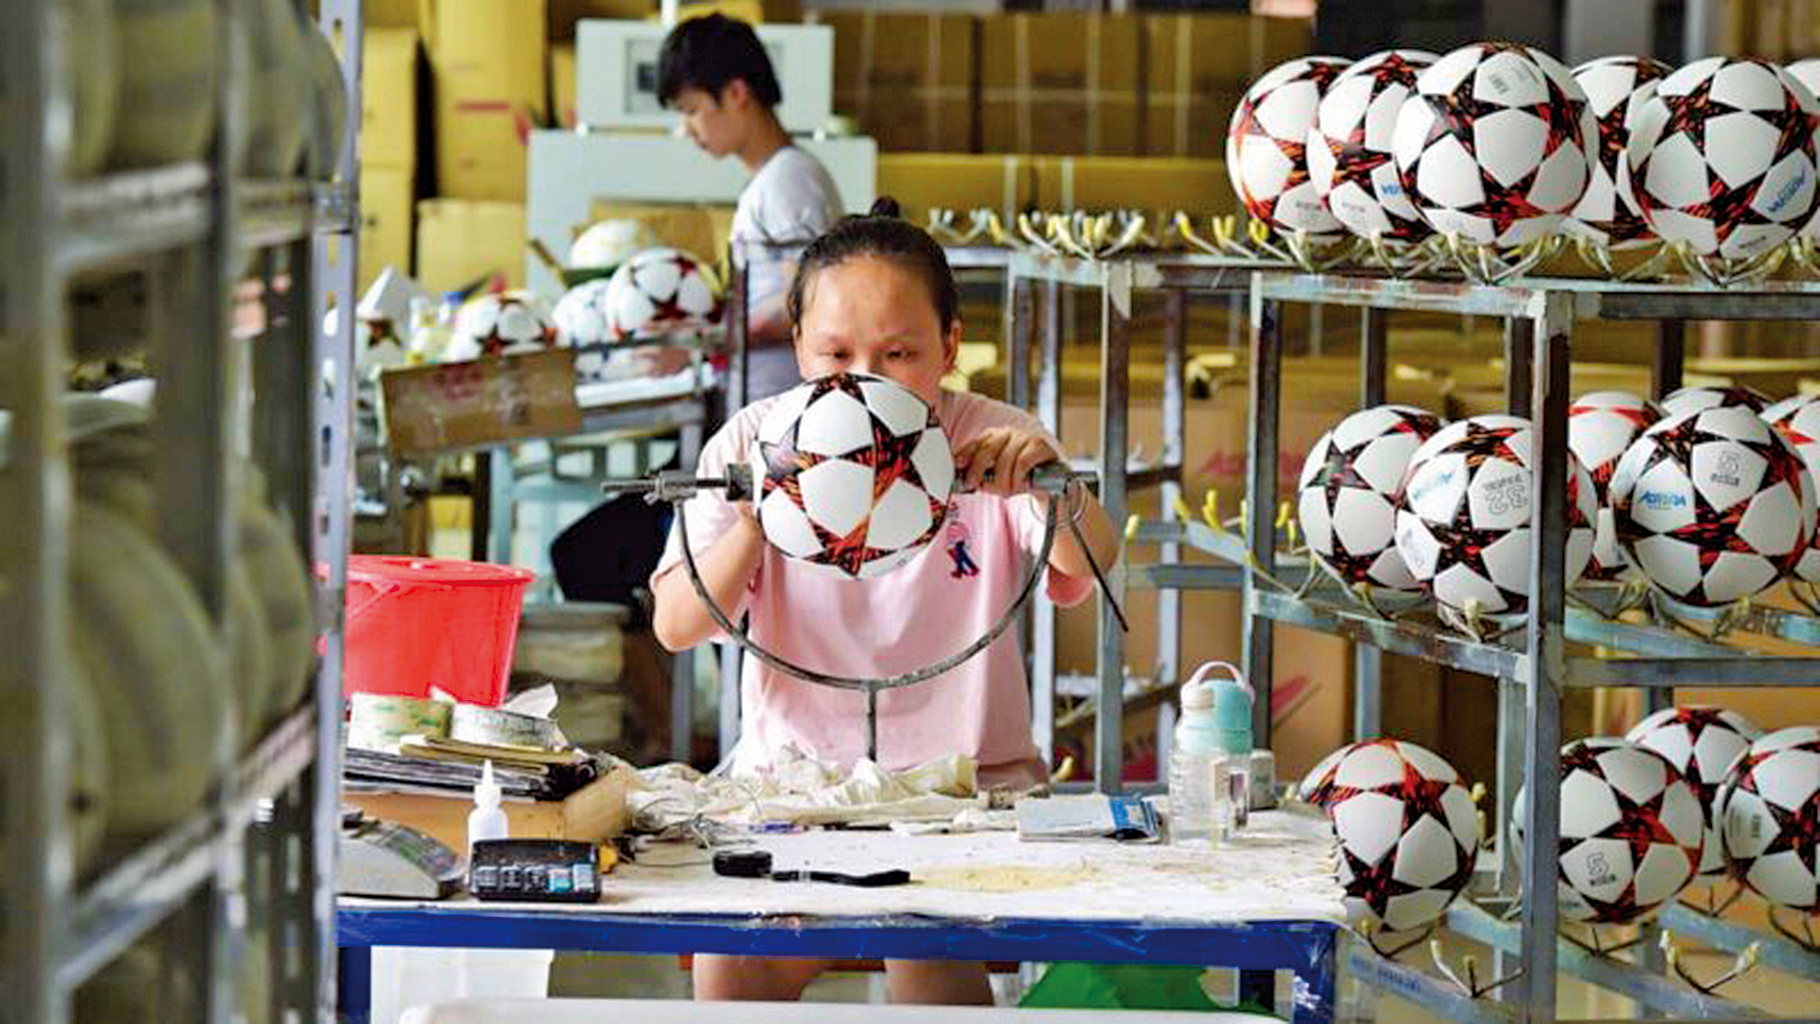 浙江義烏市一家生產足球的外貿工廠，工人們在加班製作海外客戶的足球訂單。(AFP via Getty Images)